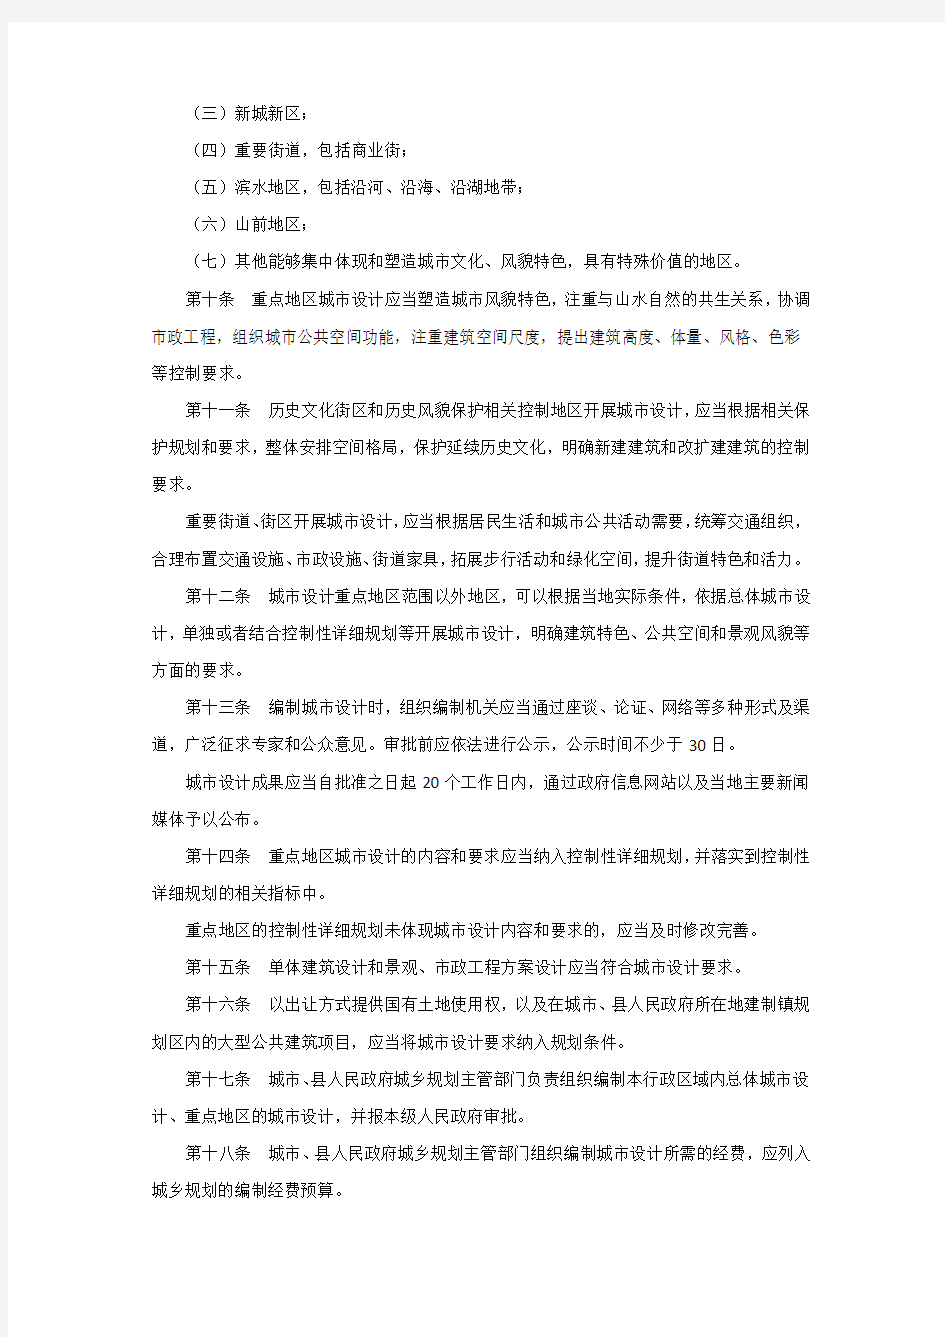 城市设计管理办法 中华人民共和国住房和城乡建设部令第35号